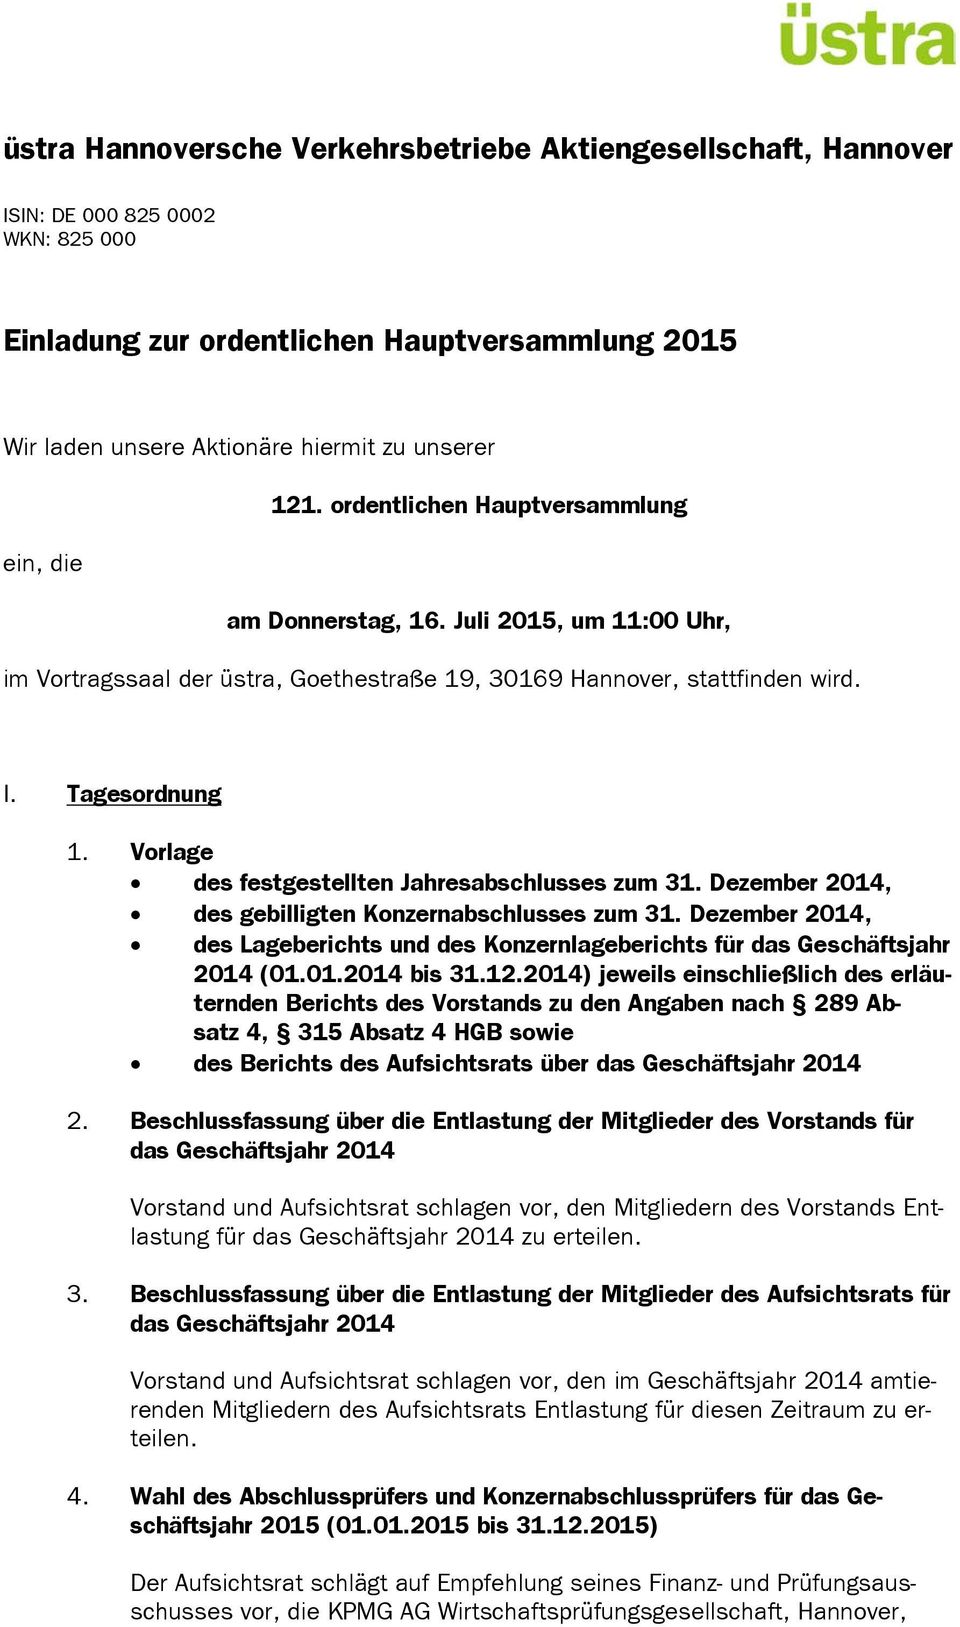 Dezember 2014, des gebilligten Konzernabschlusses zum 31. Dezember 2014, des Lageberichts und des Konzernlageberichts für das Geschäftsjahr 2014 (01.01.2014 bis 31.12.